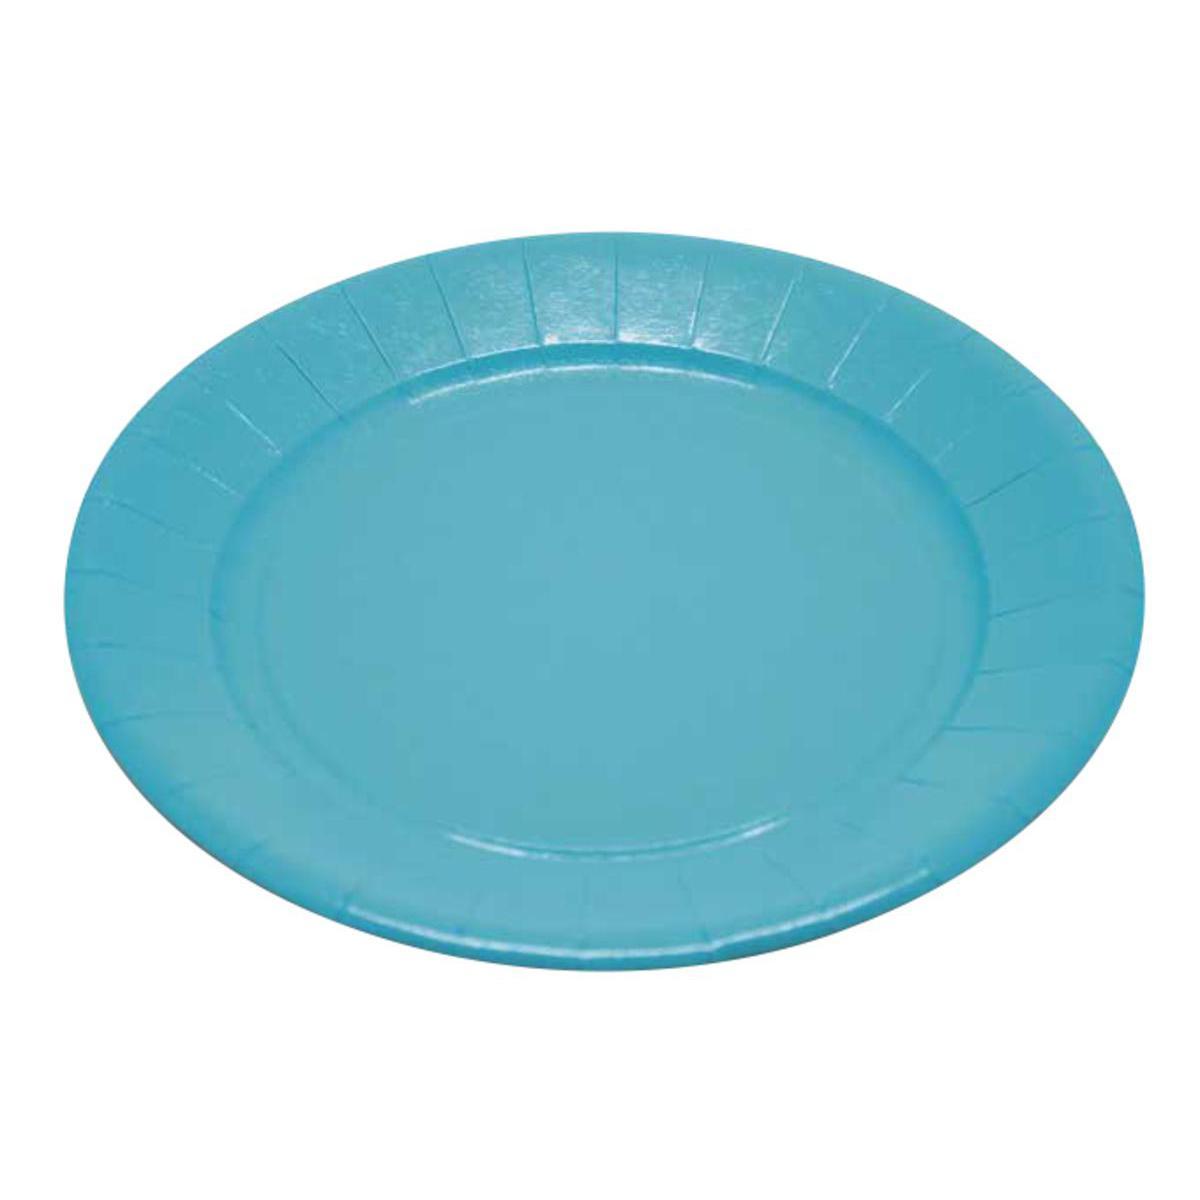 Lot de 20 assiettes - plastique - diamètre 23 cm - Bleu turquoise